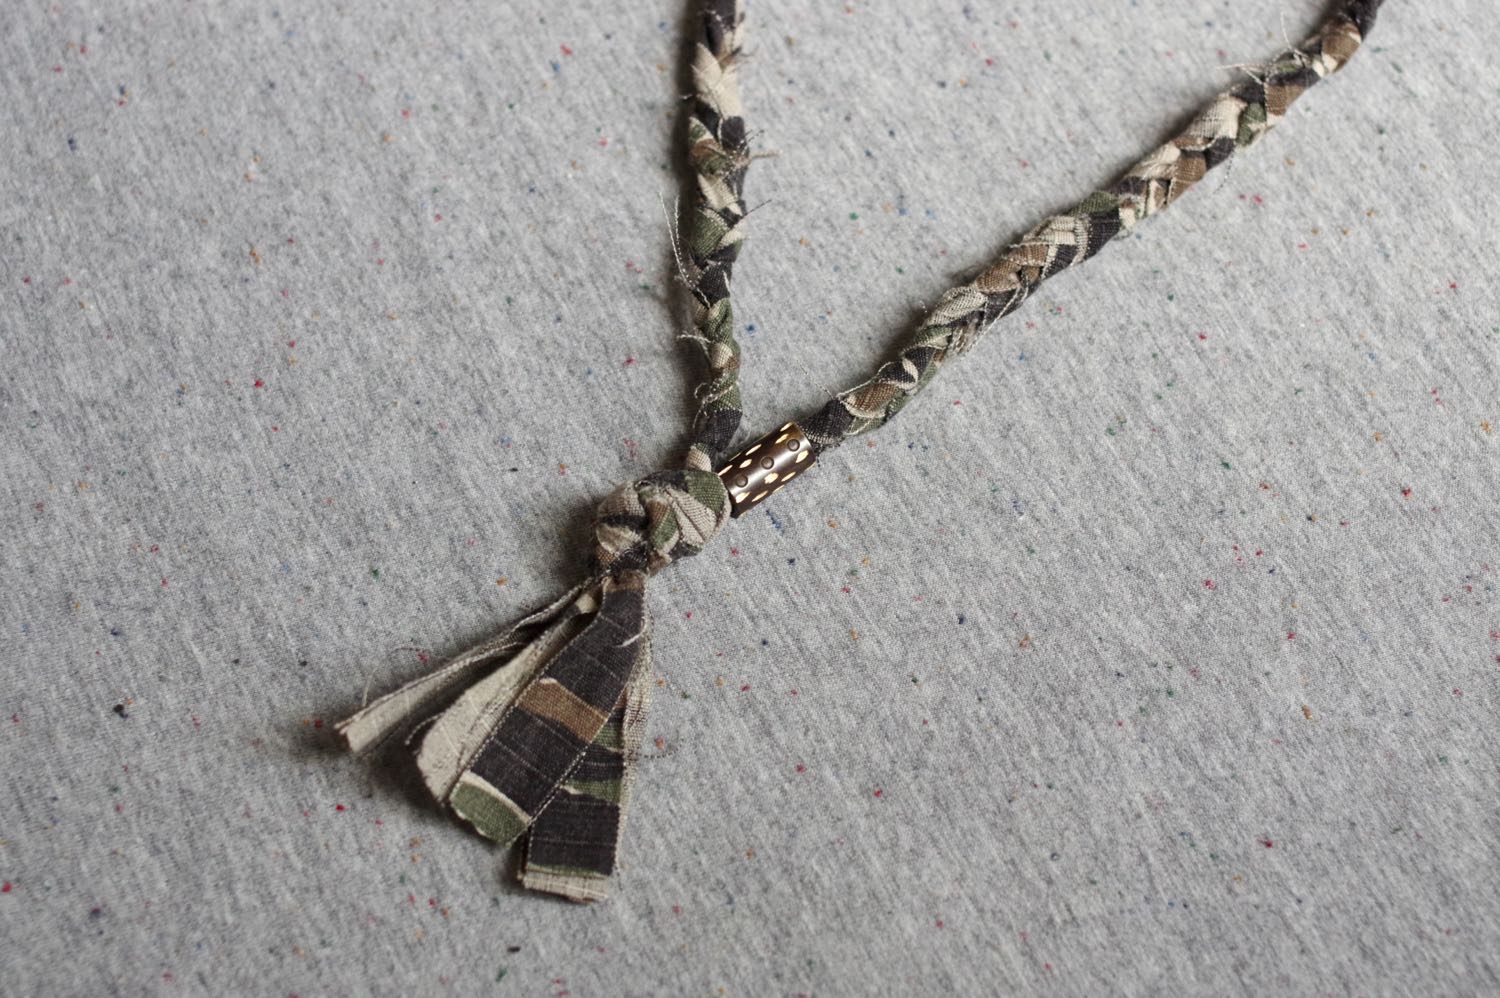 borali la marque de bijoux upcycling sort un drop military avec un collier tressé à partir de tissu camo tiger stripe vintage